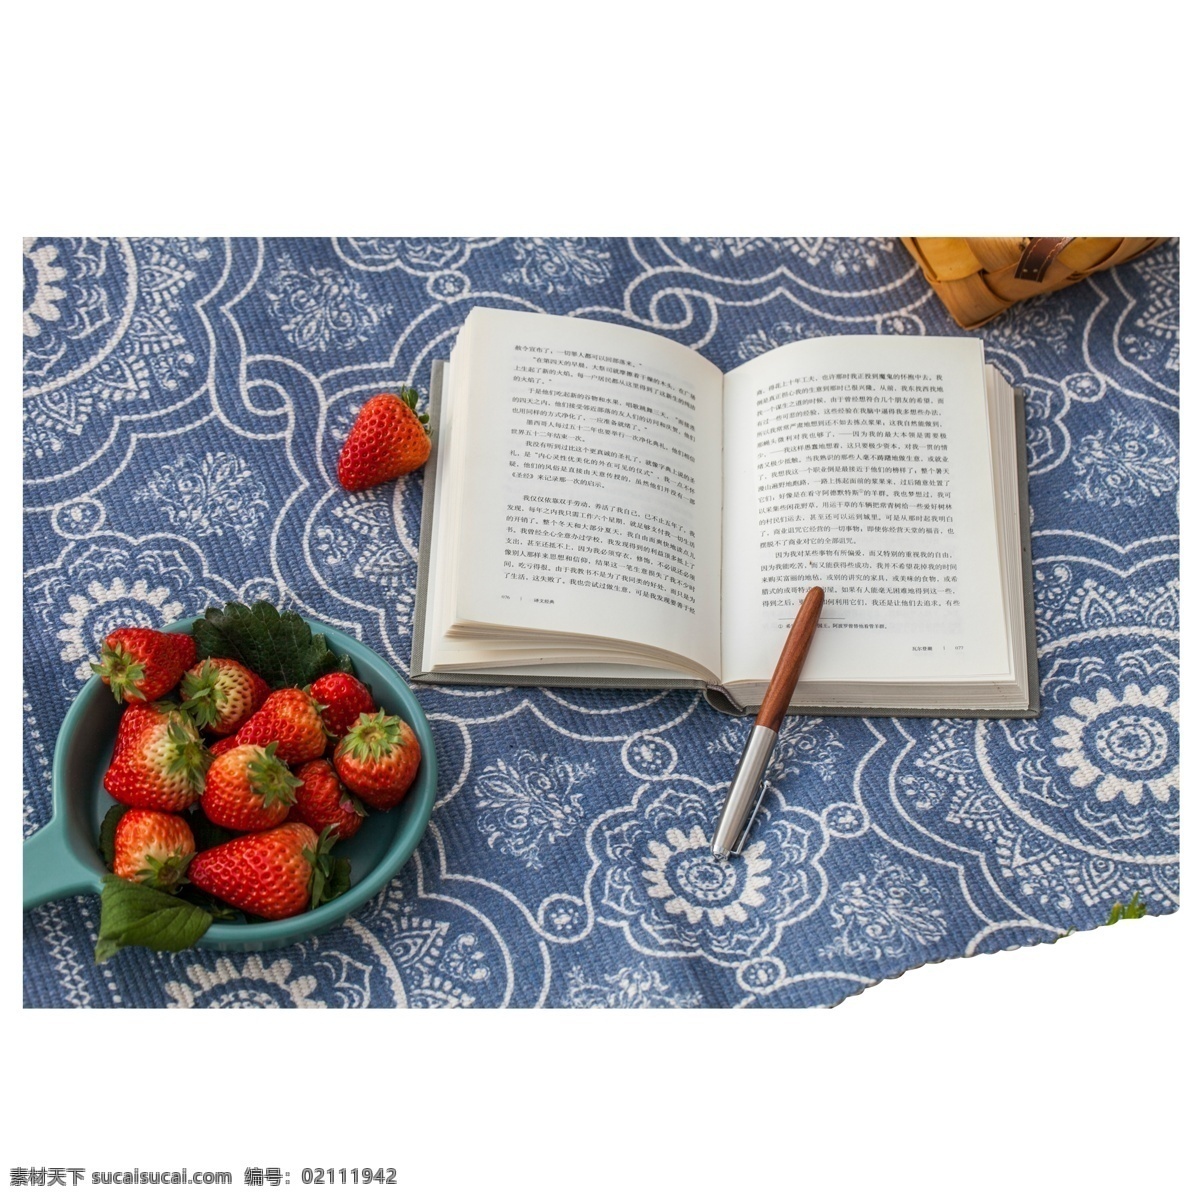 读书 蔬果 元素 果实 文字 钢笔 水果 书籍 教学 桌布 看书 真实 圆盘 热带水果 草莓